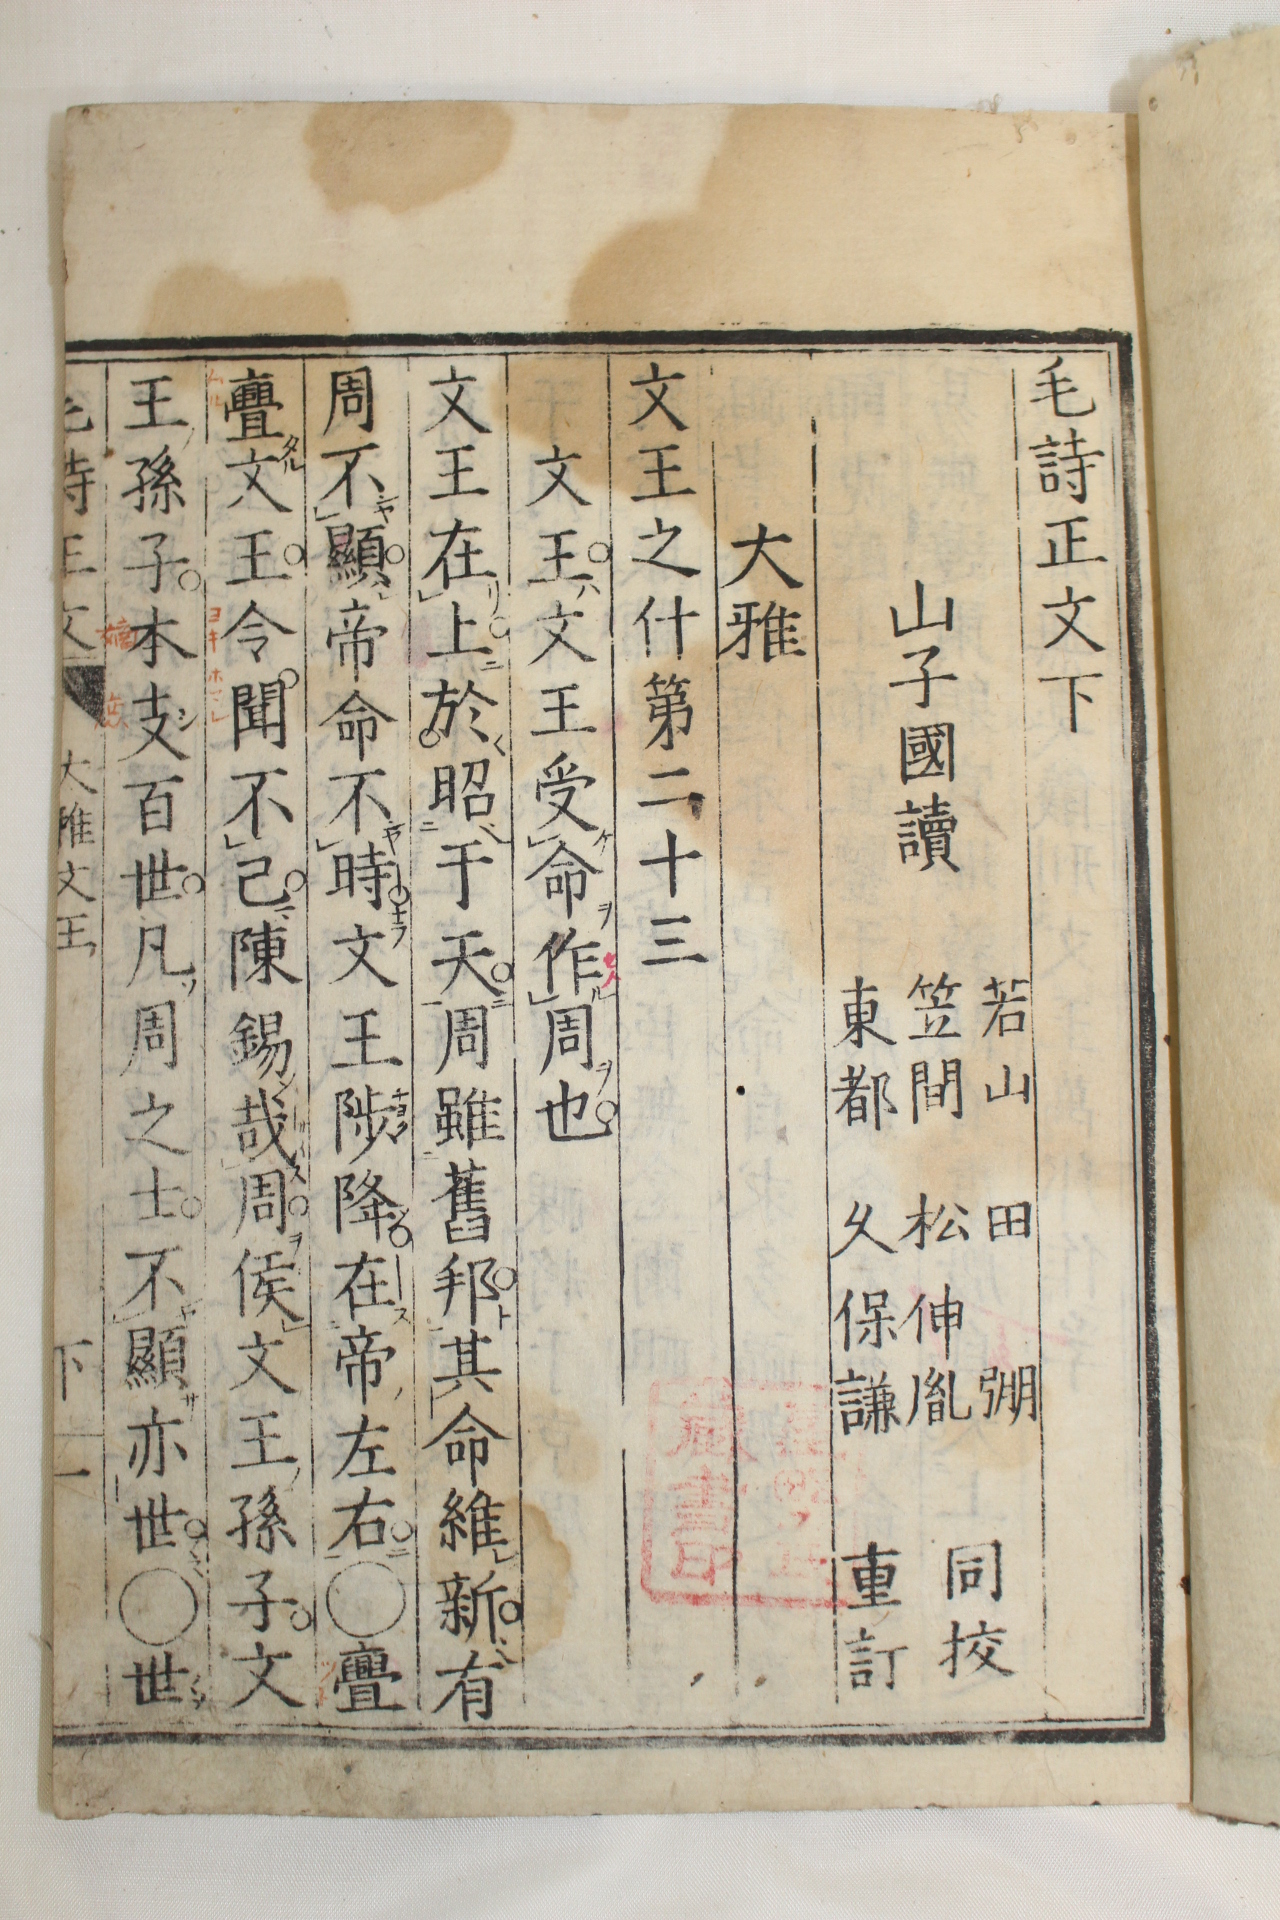 1821년(文政4年) 일본목판본 모시정문(毛詩正文) 하권 1책